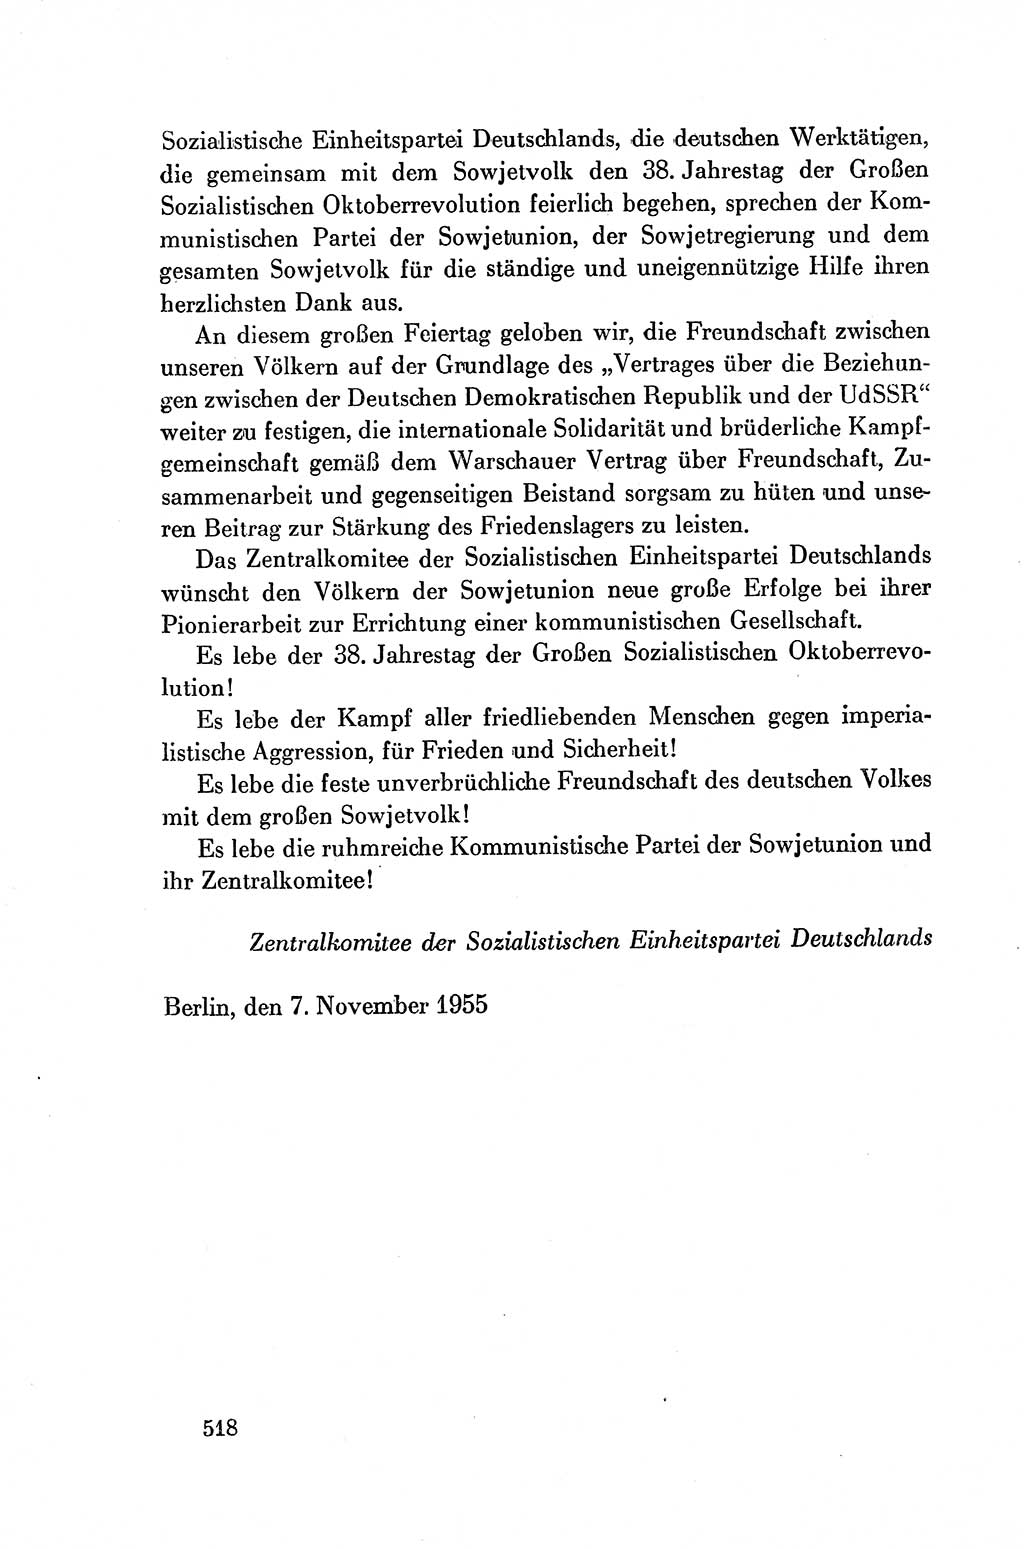 Dokumente der Sozialistischen Einheitspartei Deutschlands (SED) [Deutsche Demokratische Republik (DDR)] 1954-1955, Seite 518 (Dok. SED DDR 1954-1955, S. 518)